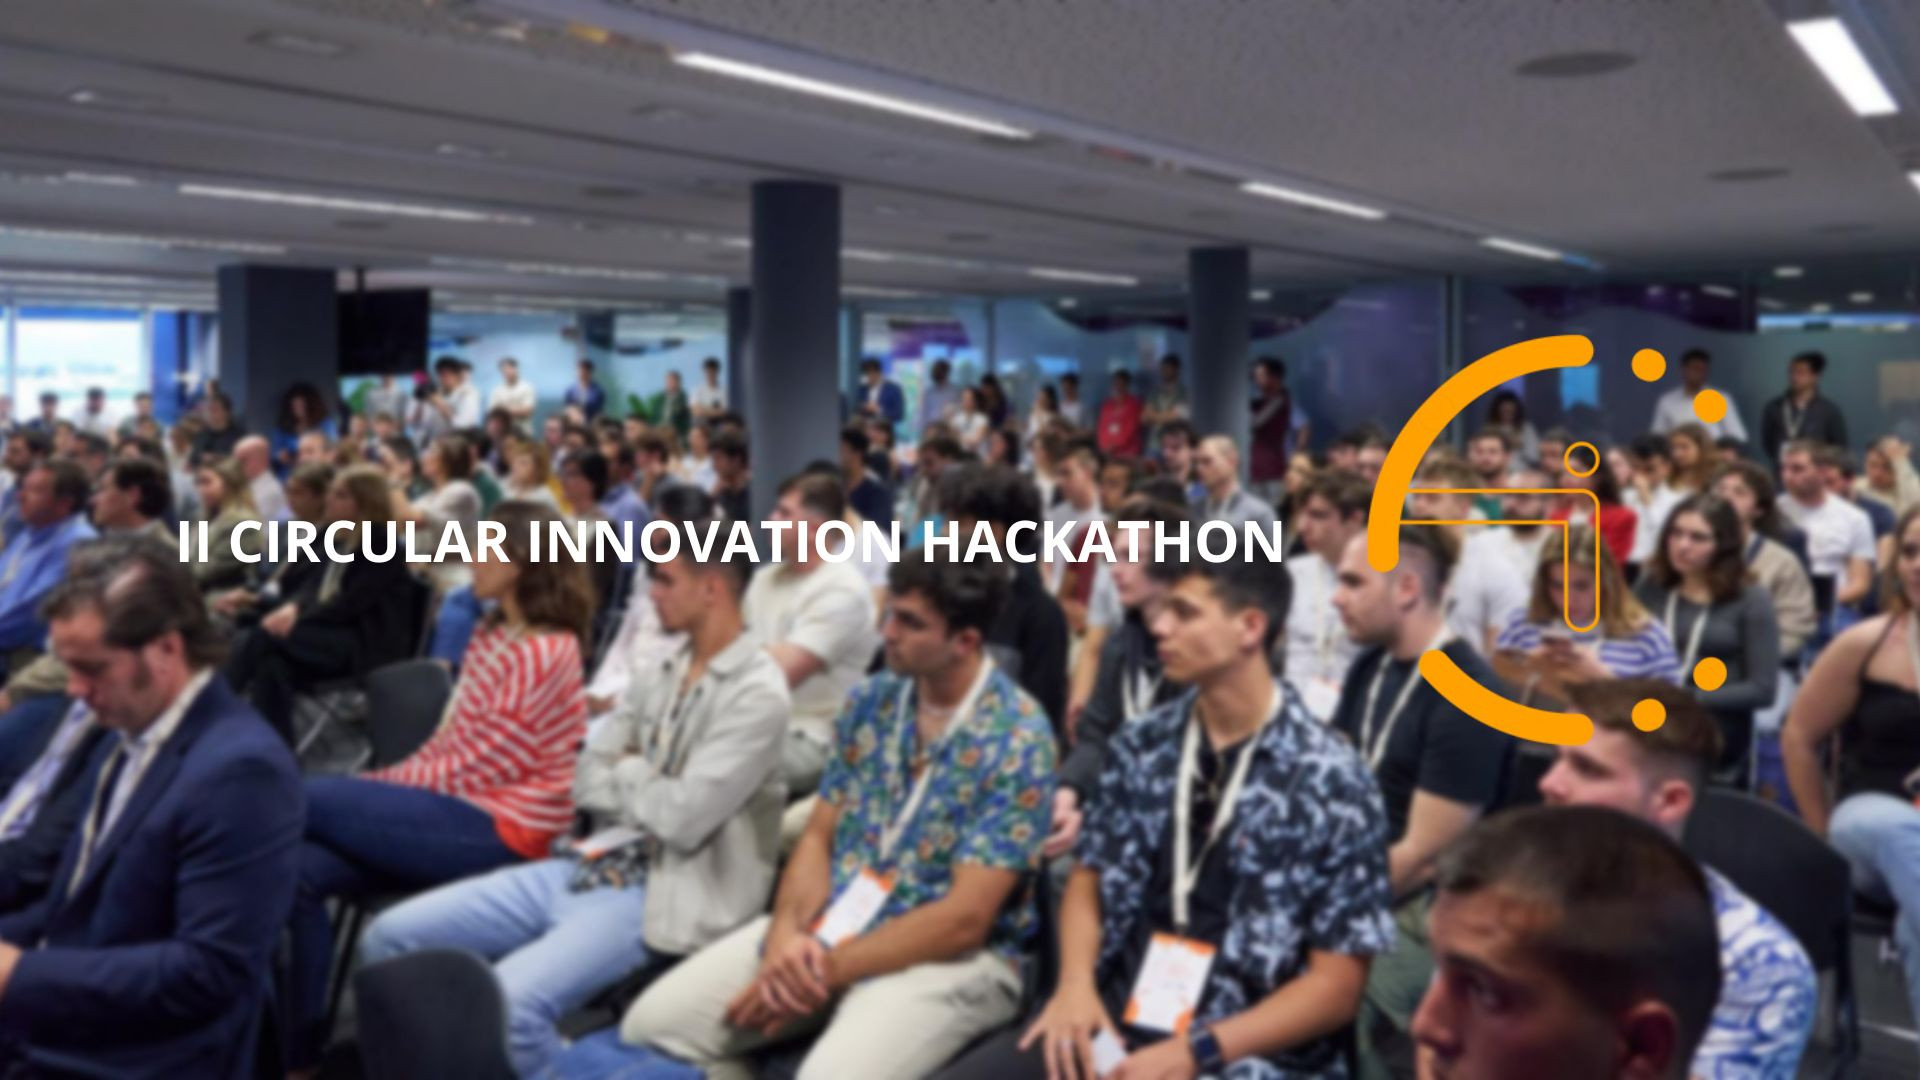 IMPULSA BALEARS llança el II Circular Innovation Hackathon
